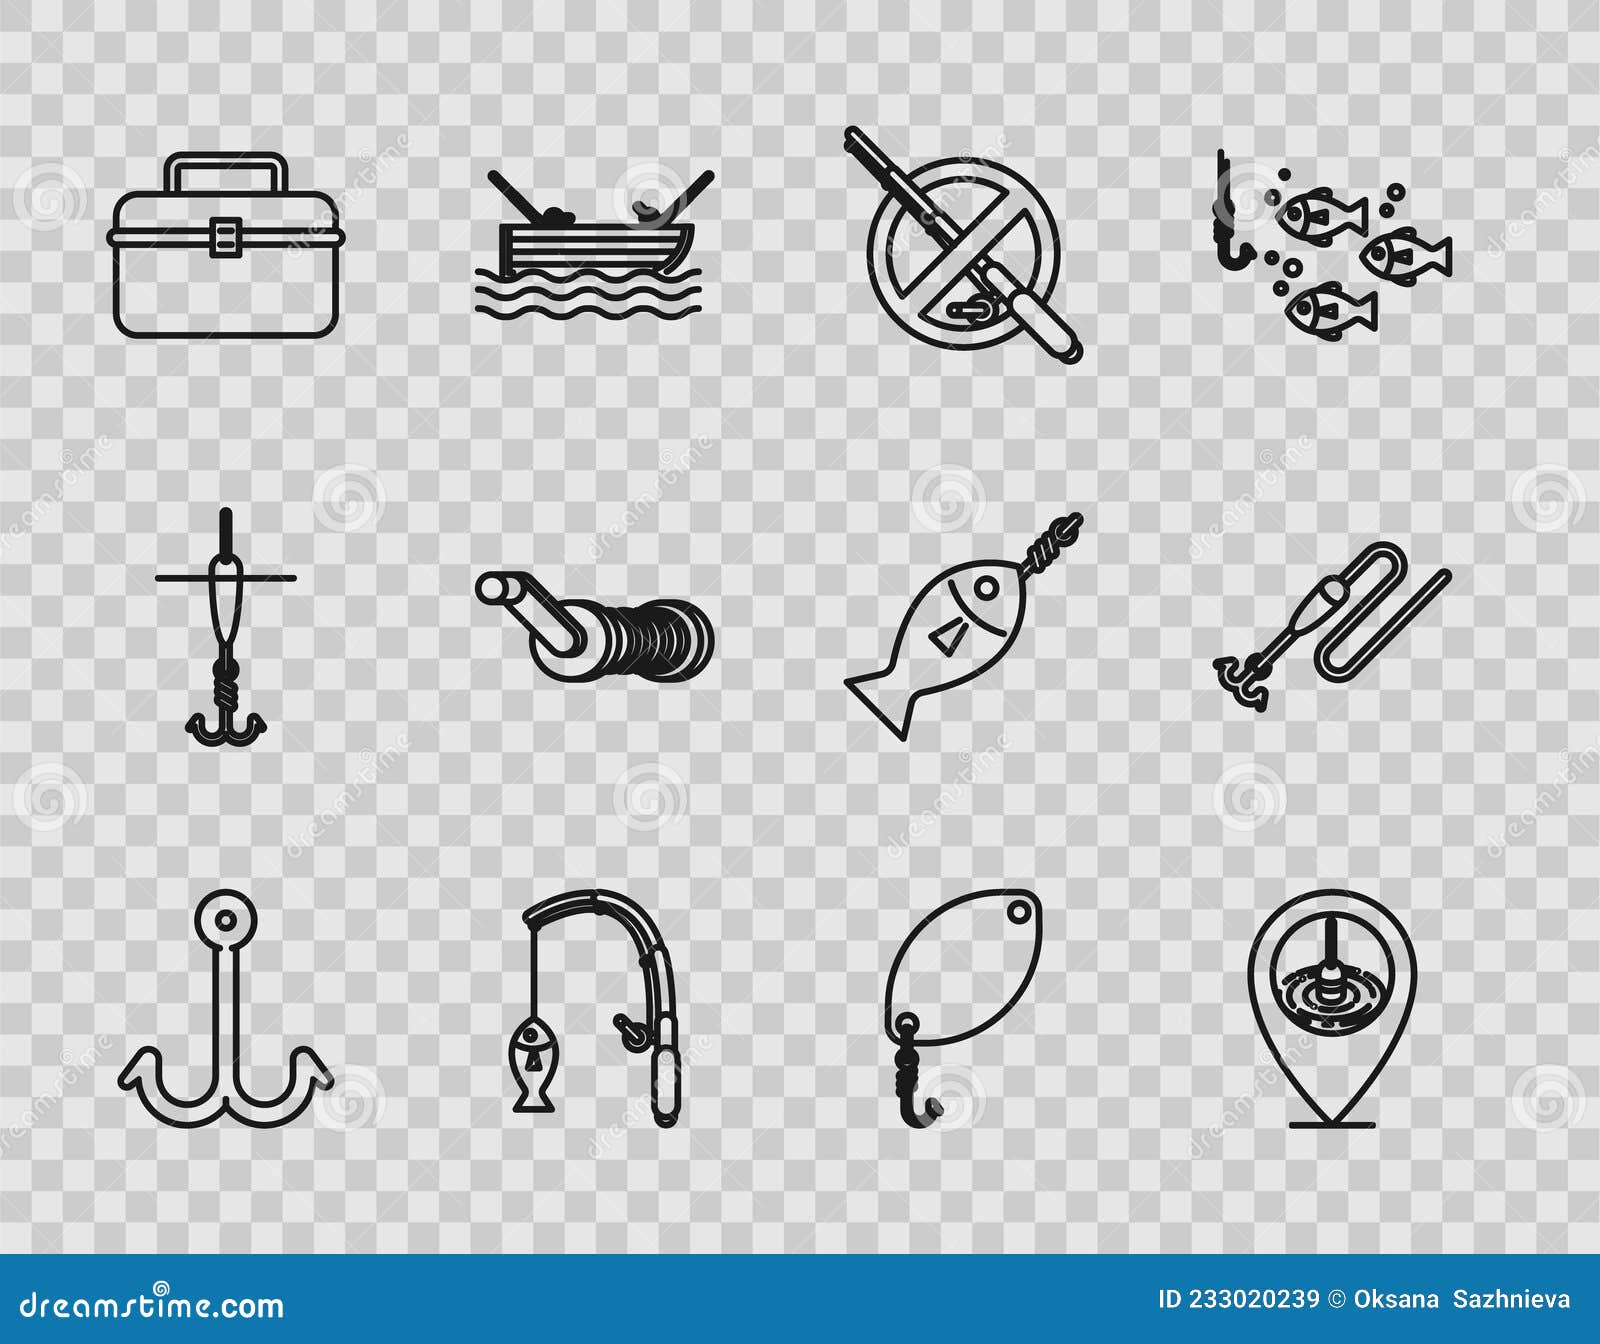 Fishing Rod Icon Stock Illustrations – 20,555 Fishing Rod Icon